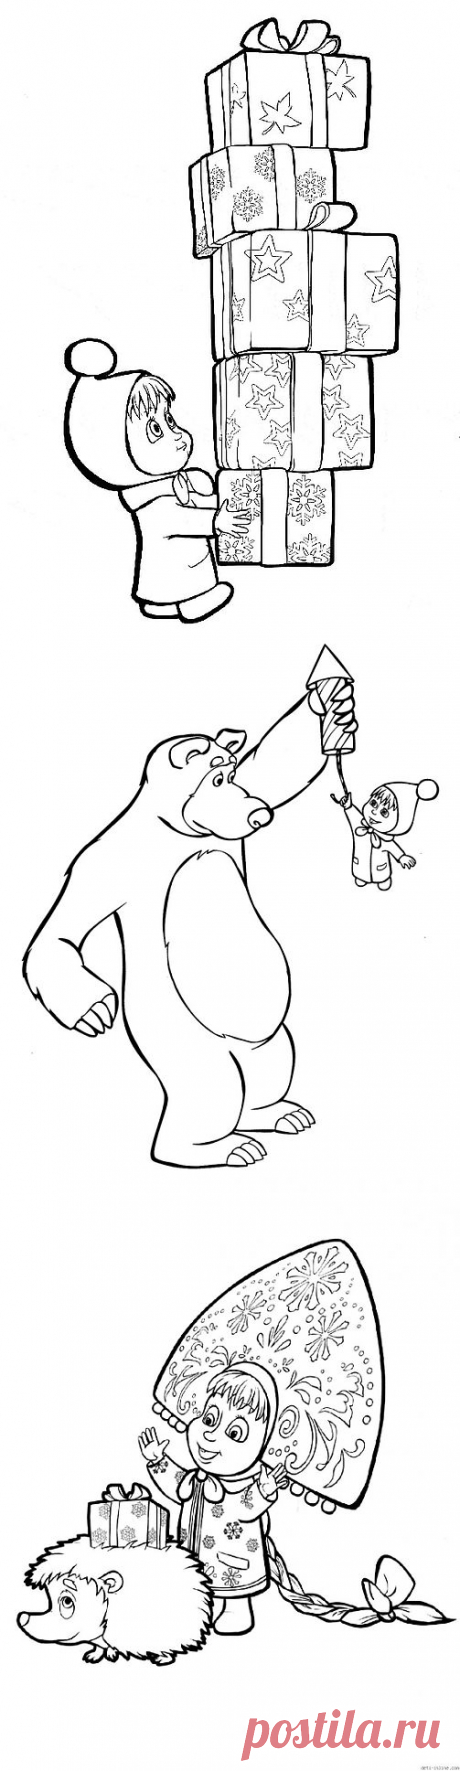 Новогодние раскраски на тему Маша и Медведь.